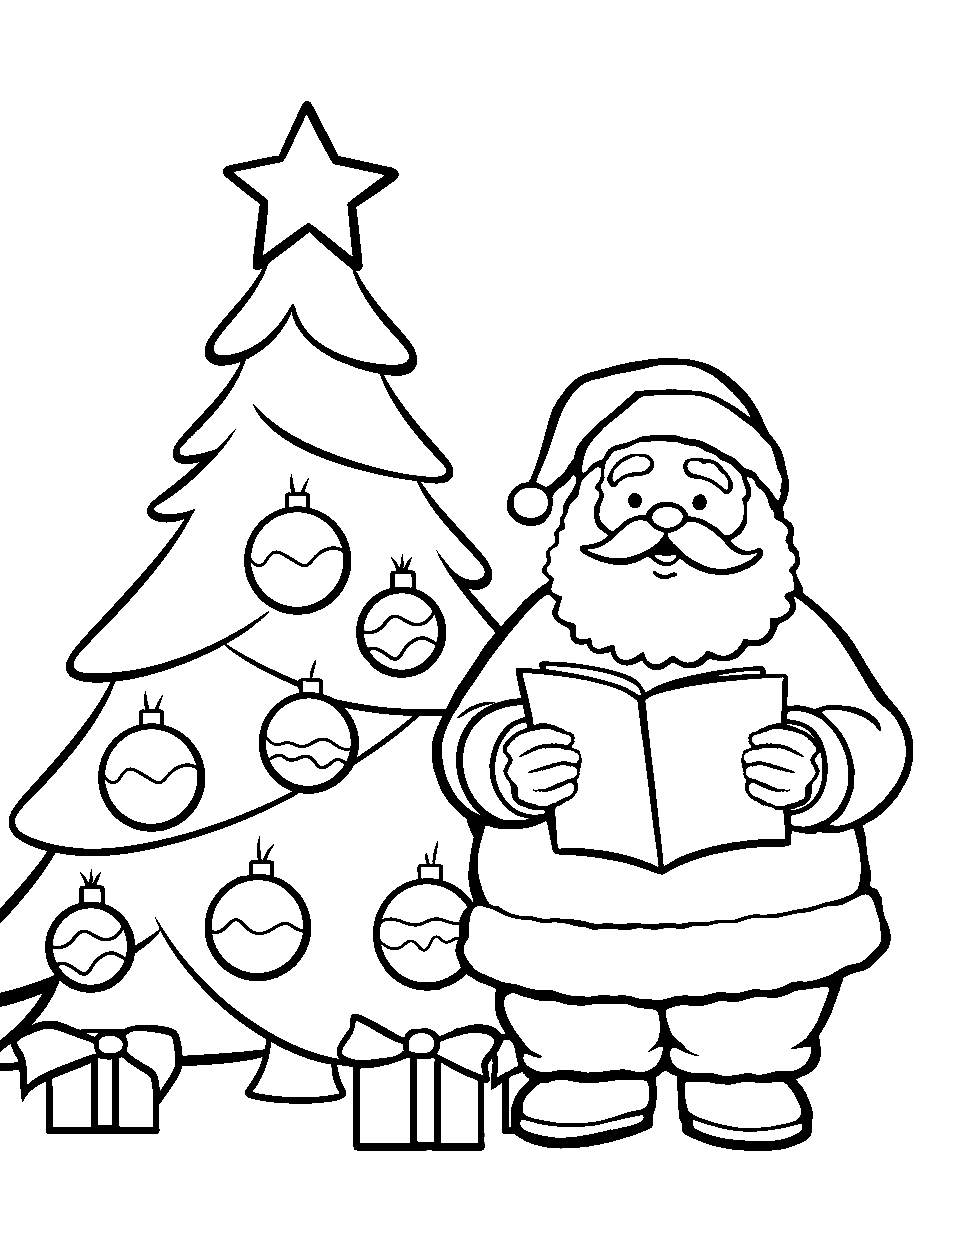 Santa Reading a Christmas Story Coloring Page - Santa reading a festive tale beside a Christmas tree.